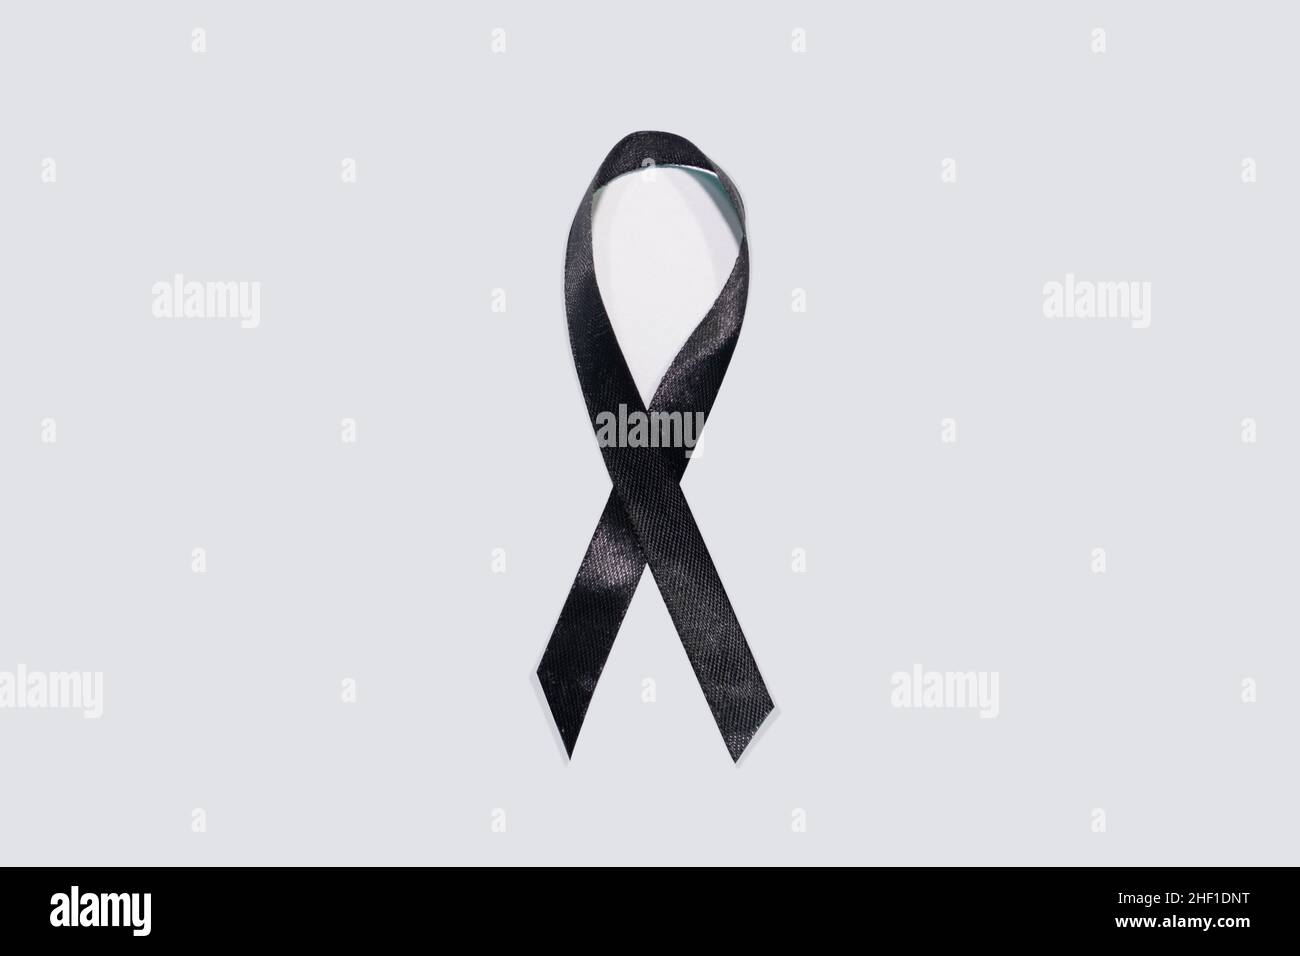 Black awareness ribbon on white background. Mourning and melanoma symbol Stock Photo